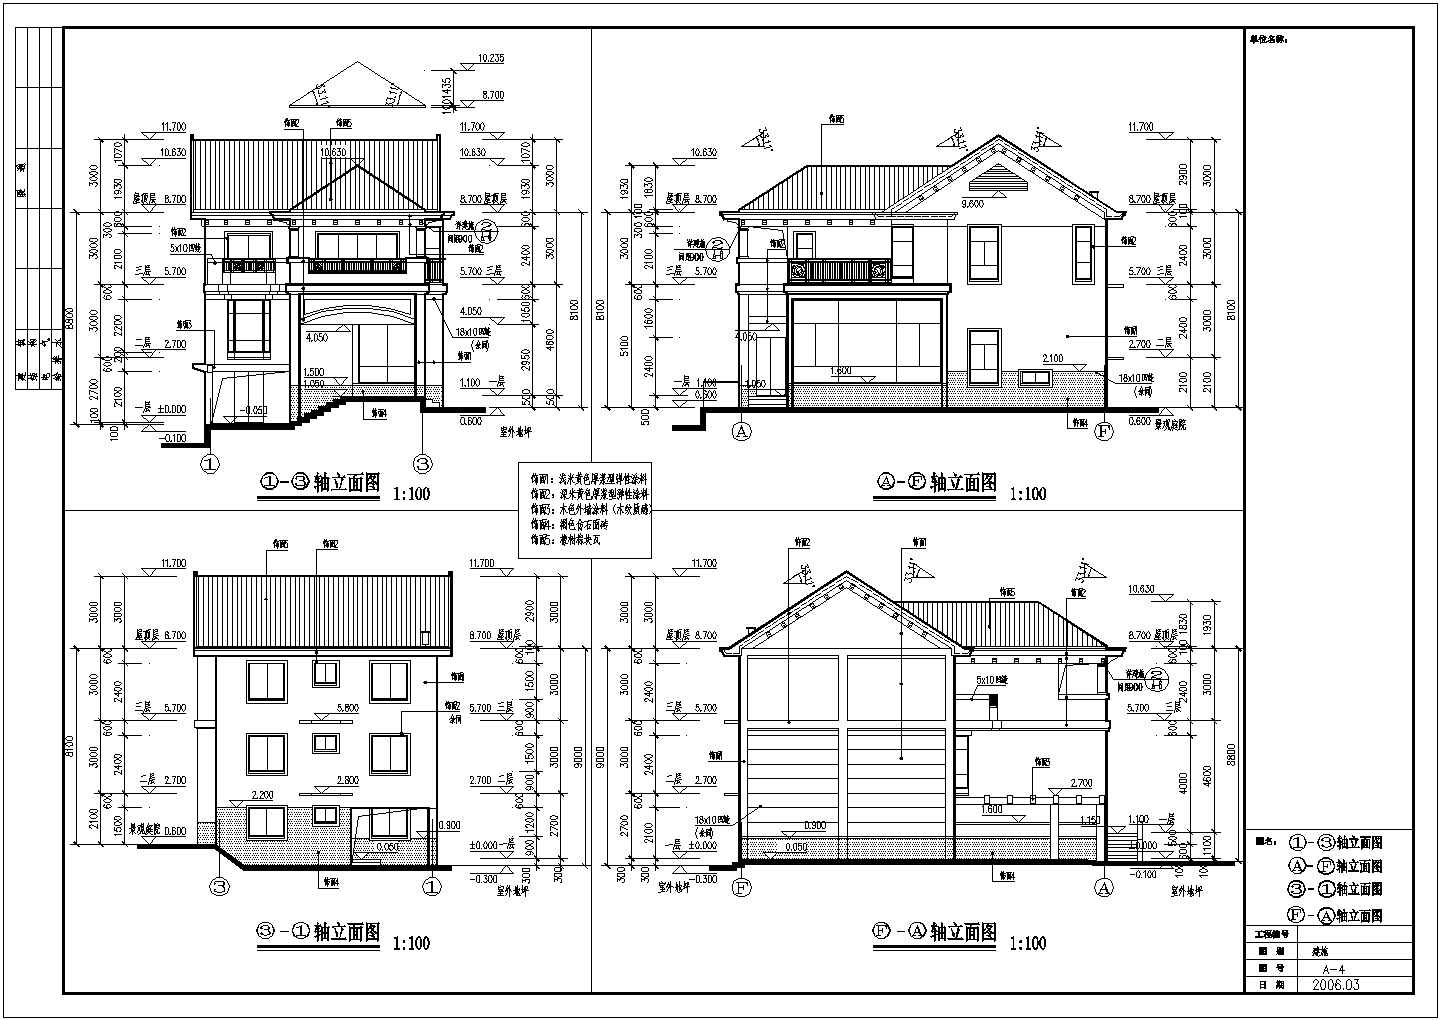 浙江省东南部沿海某城市CAD别墅建筑图